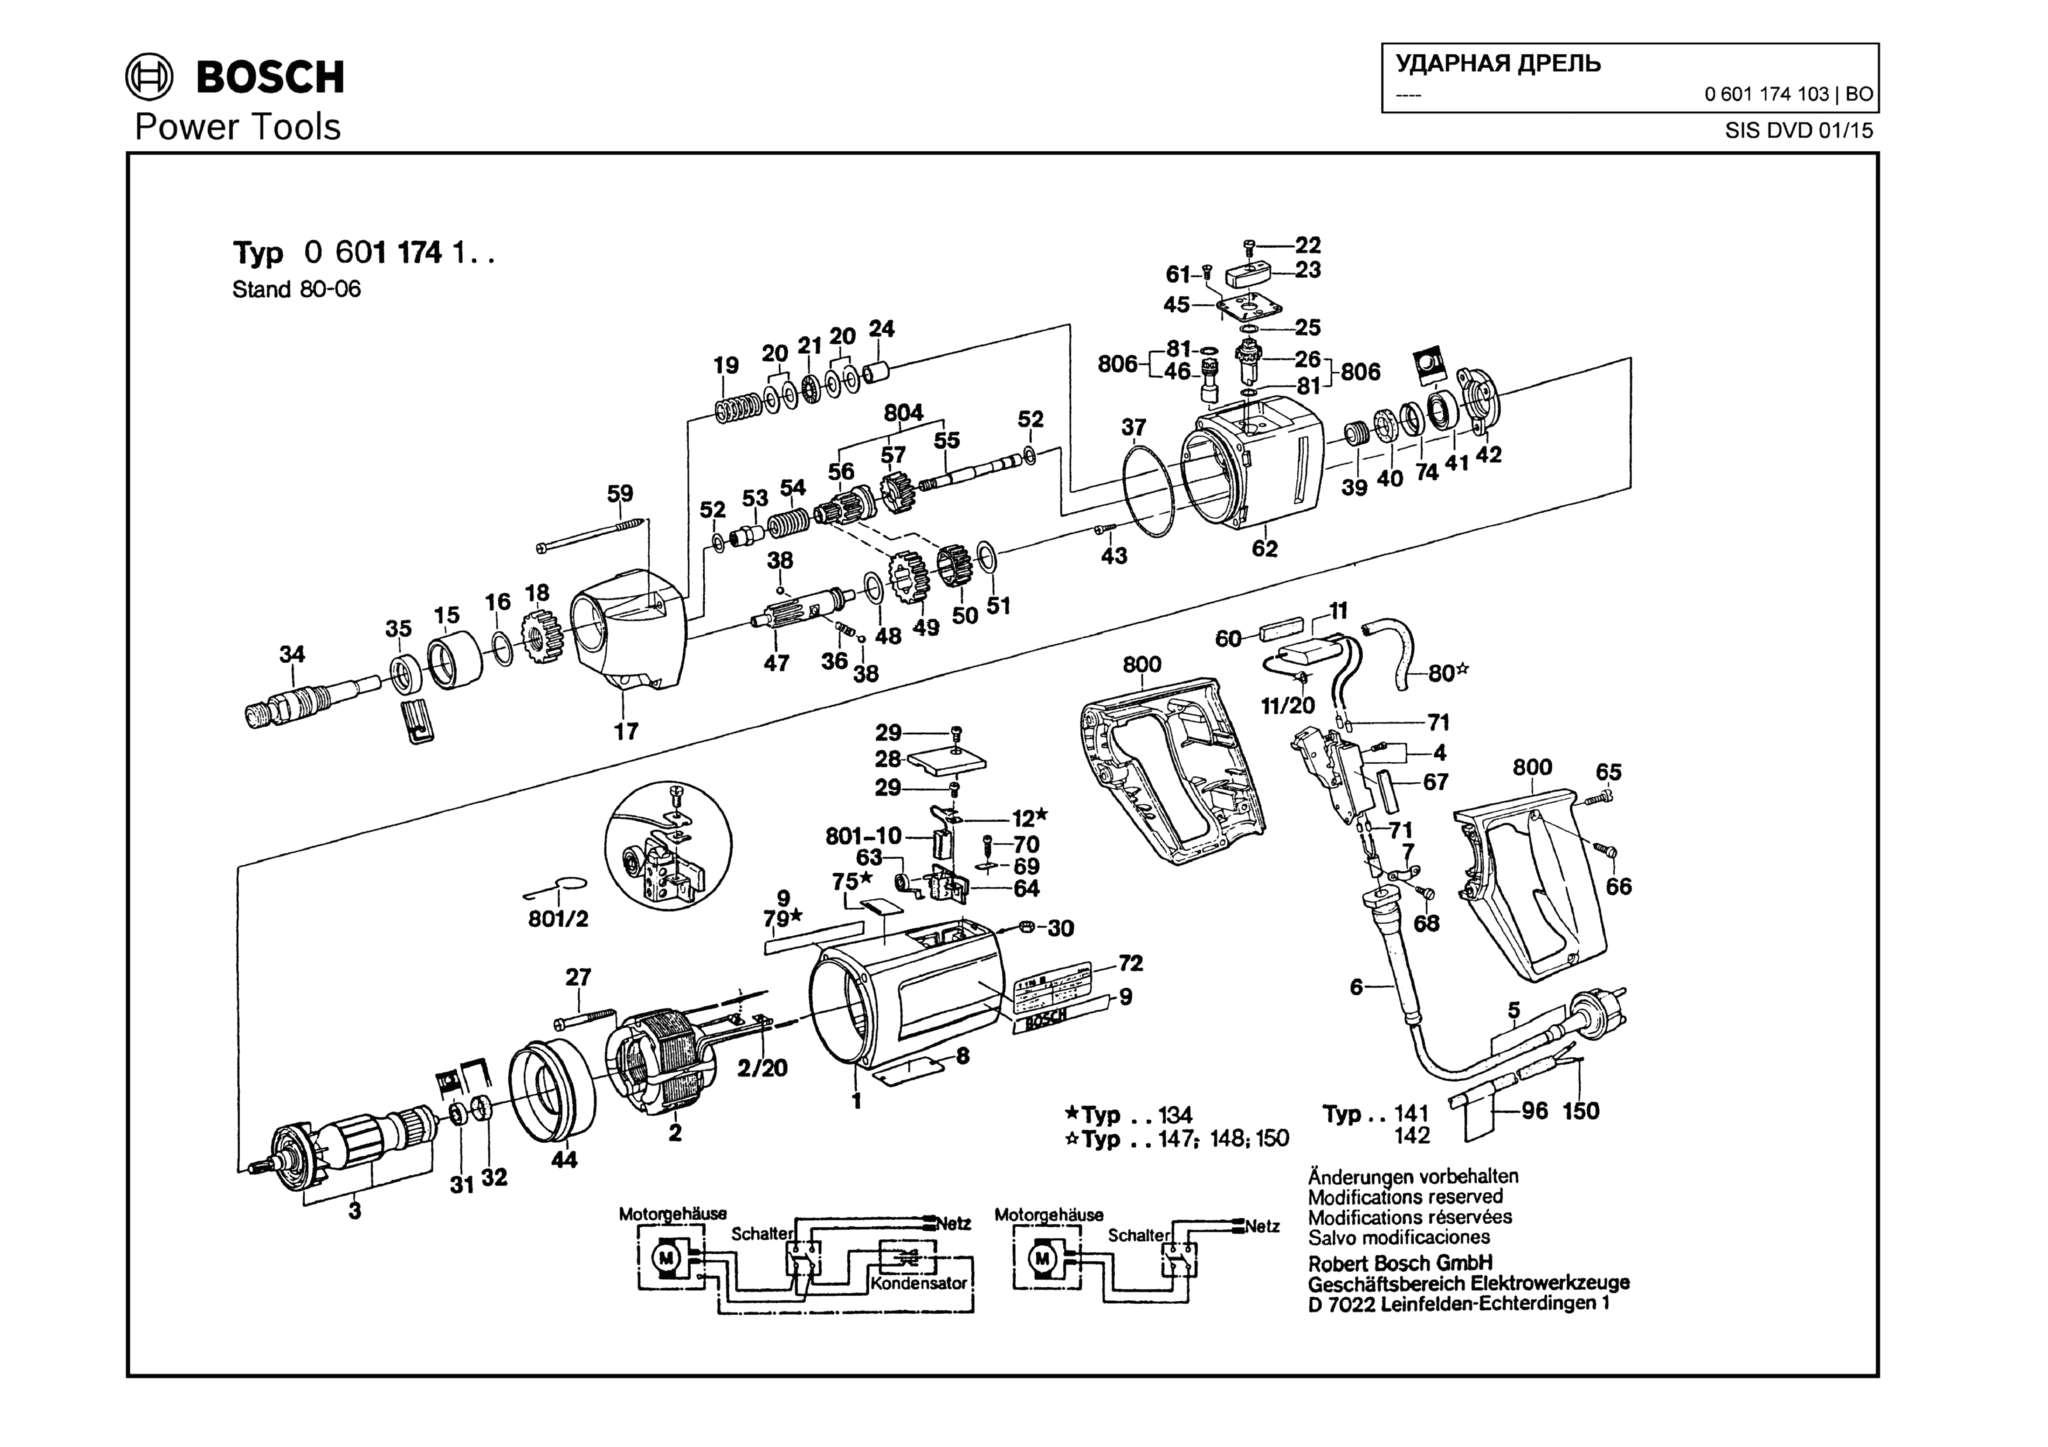 Запчасти, схема и деталировка Bosch (ТИП 0601174103)